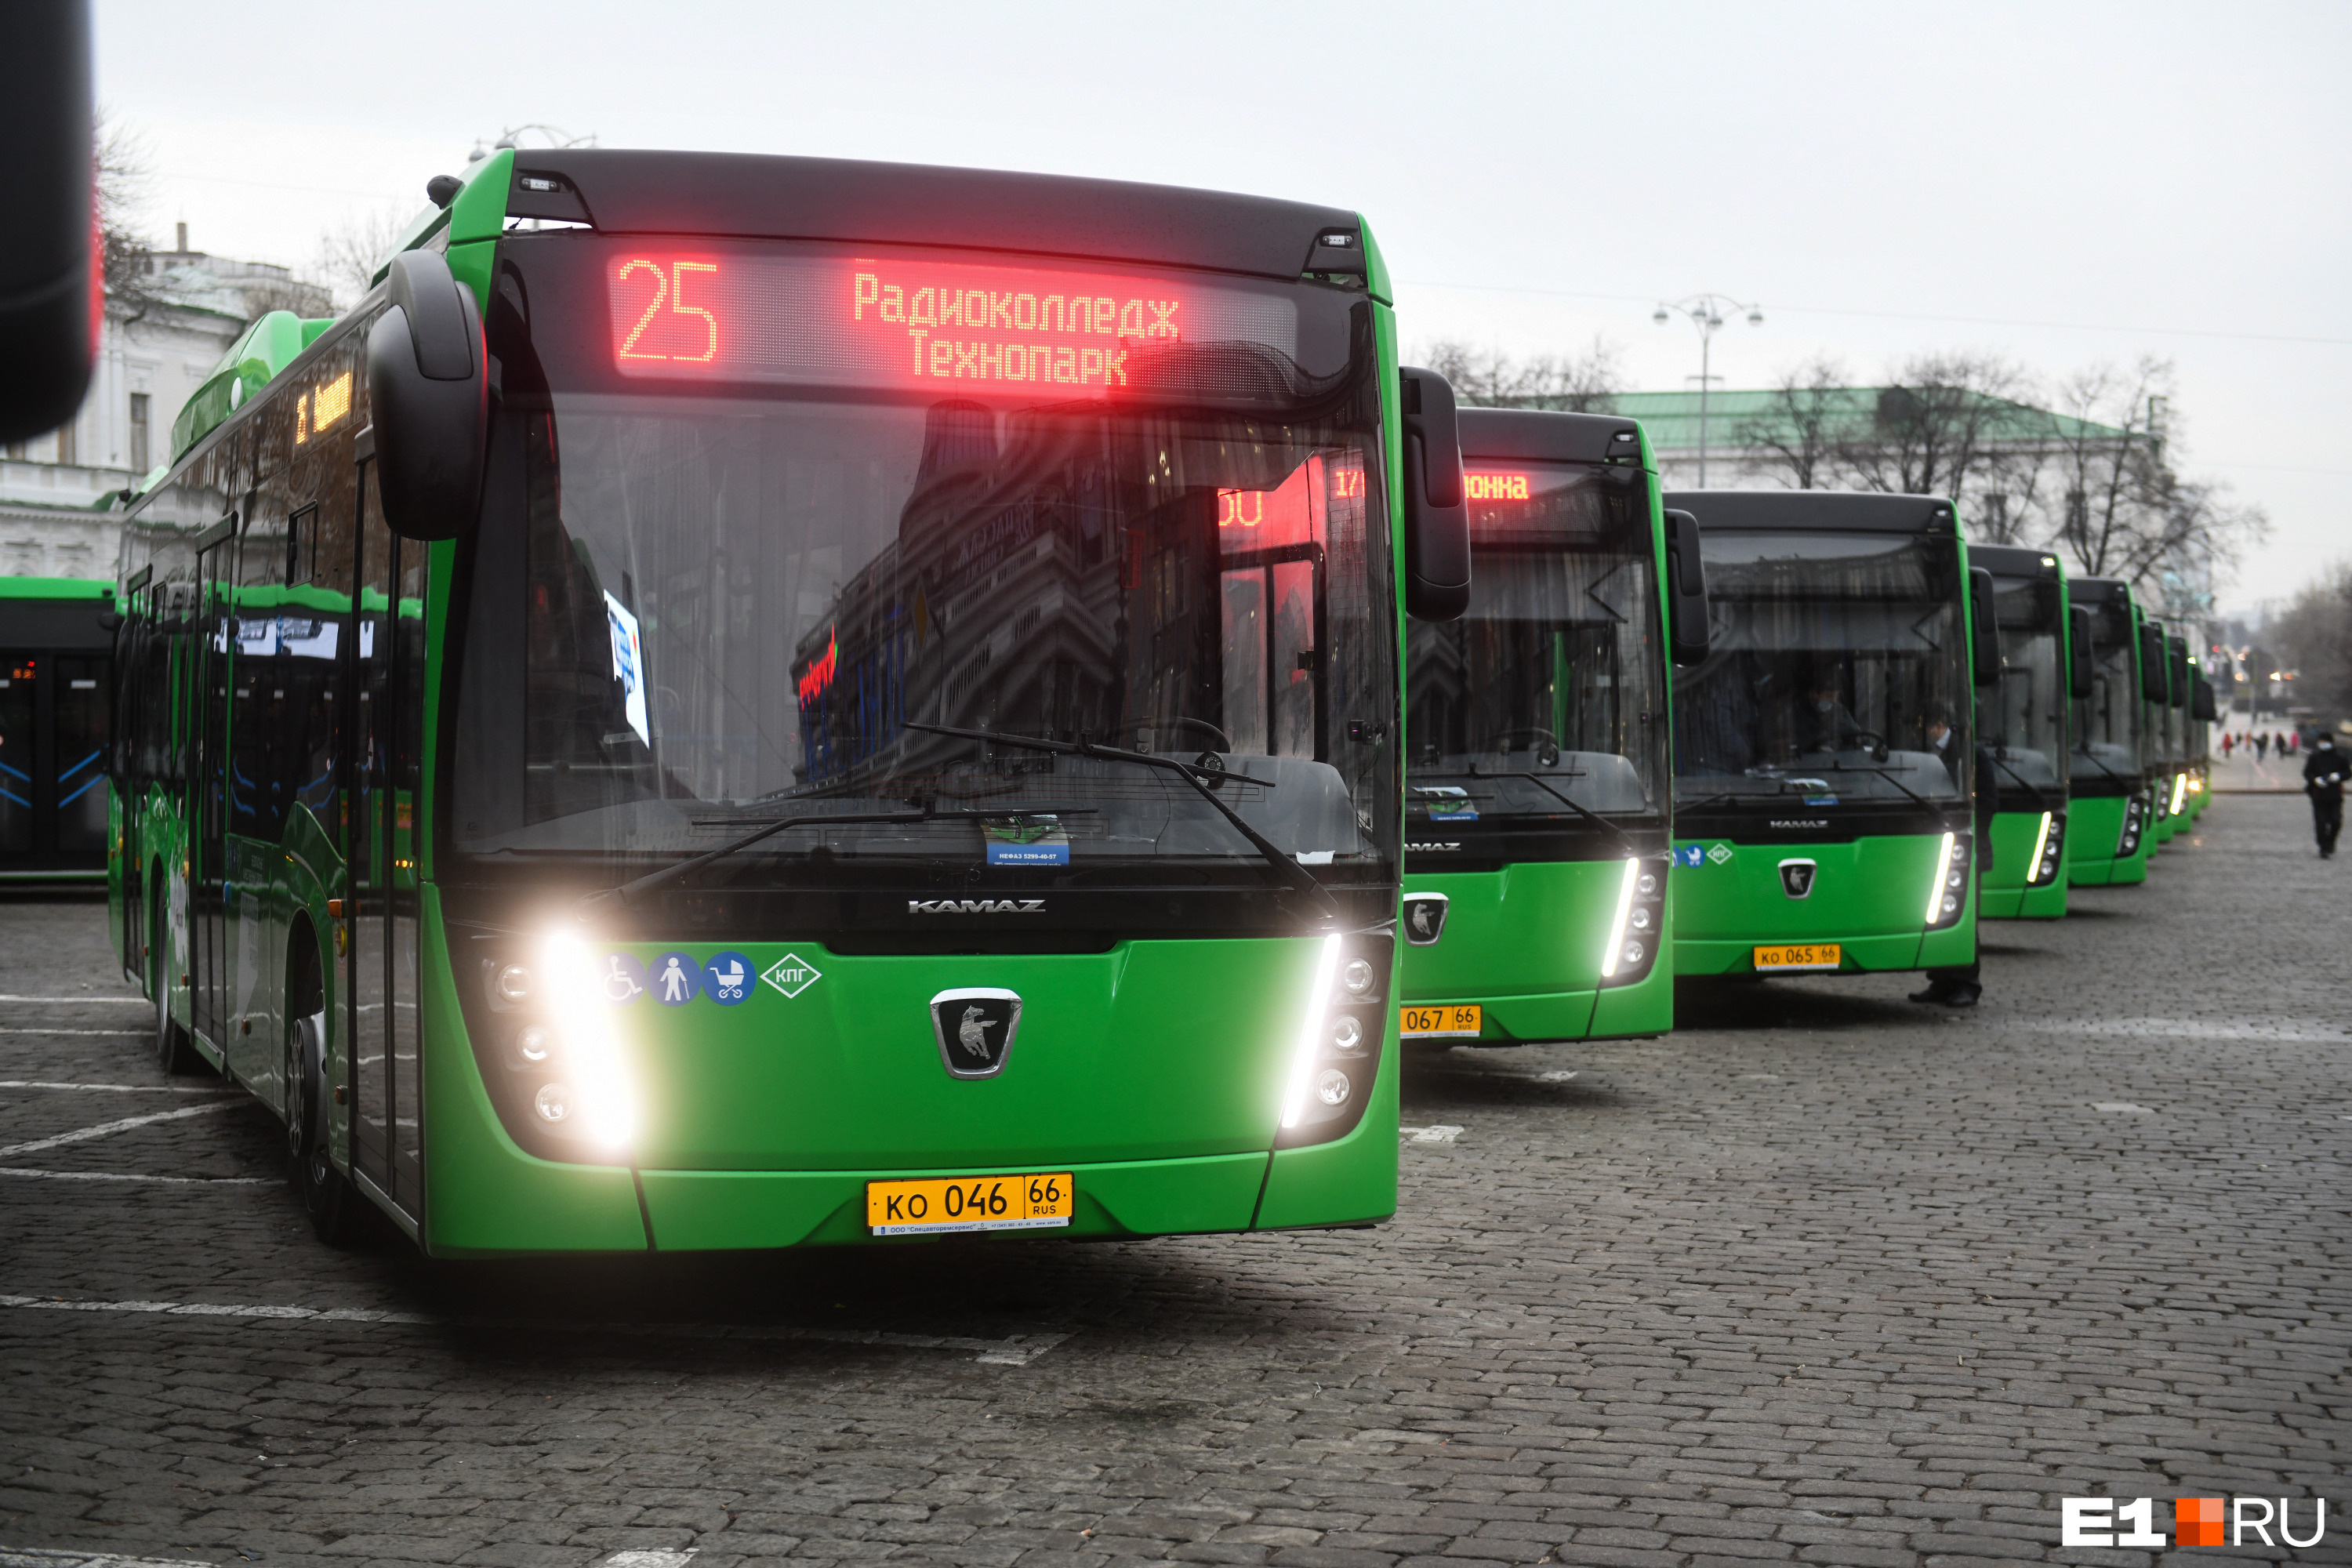 Новые автобусы, которые город получил по федеральной программе, станут первым транспортом, где вместо кондукторов будут валидаторы